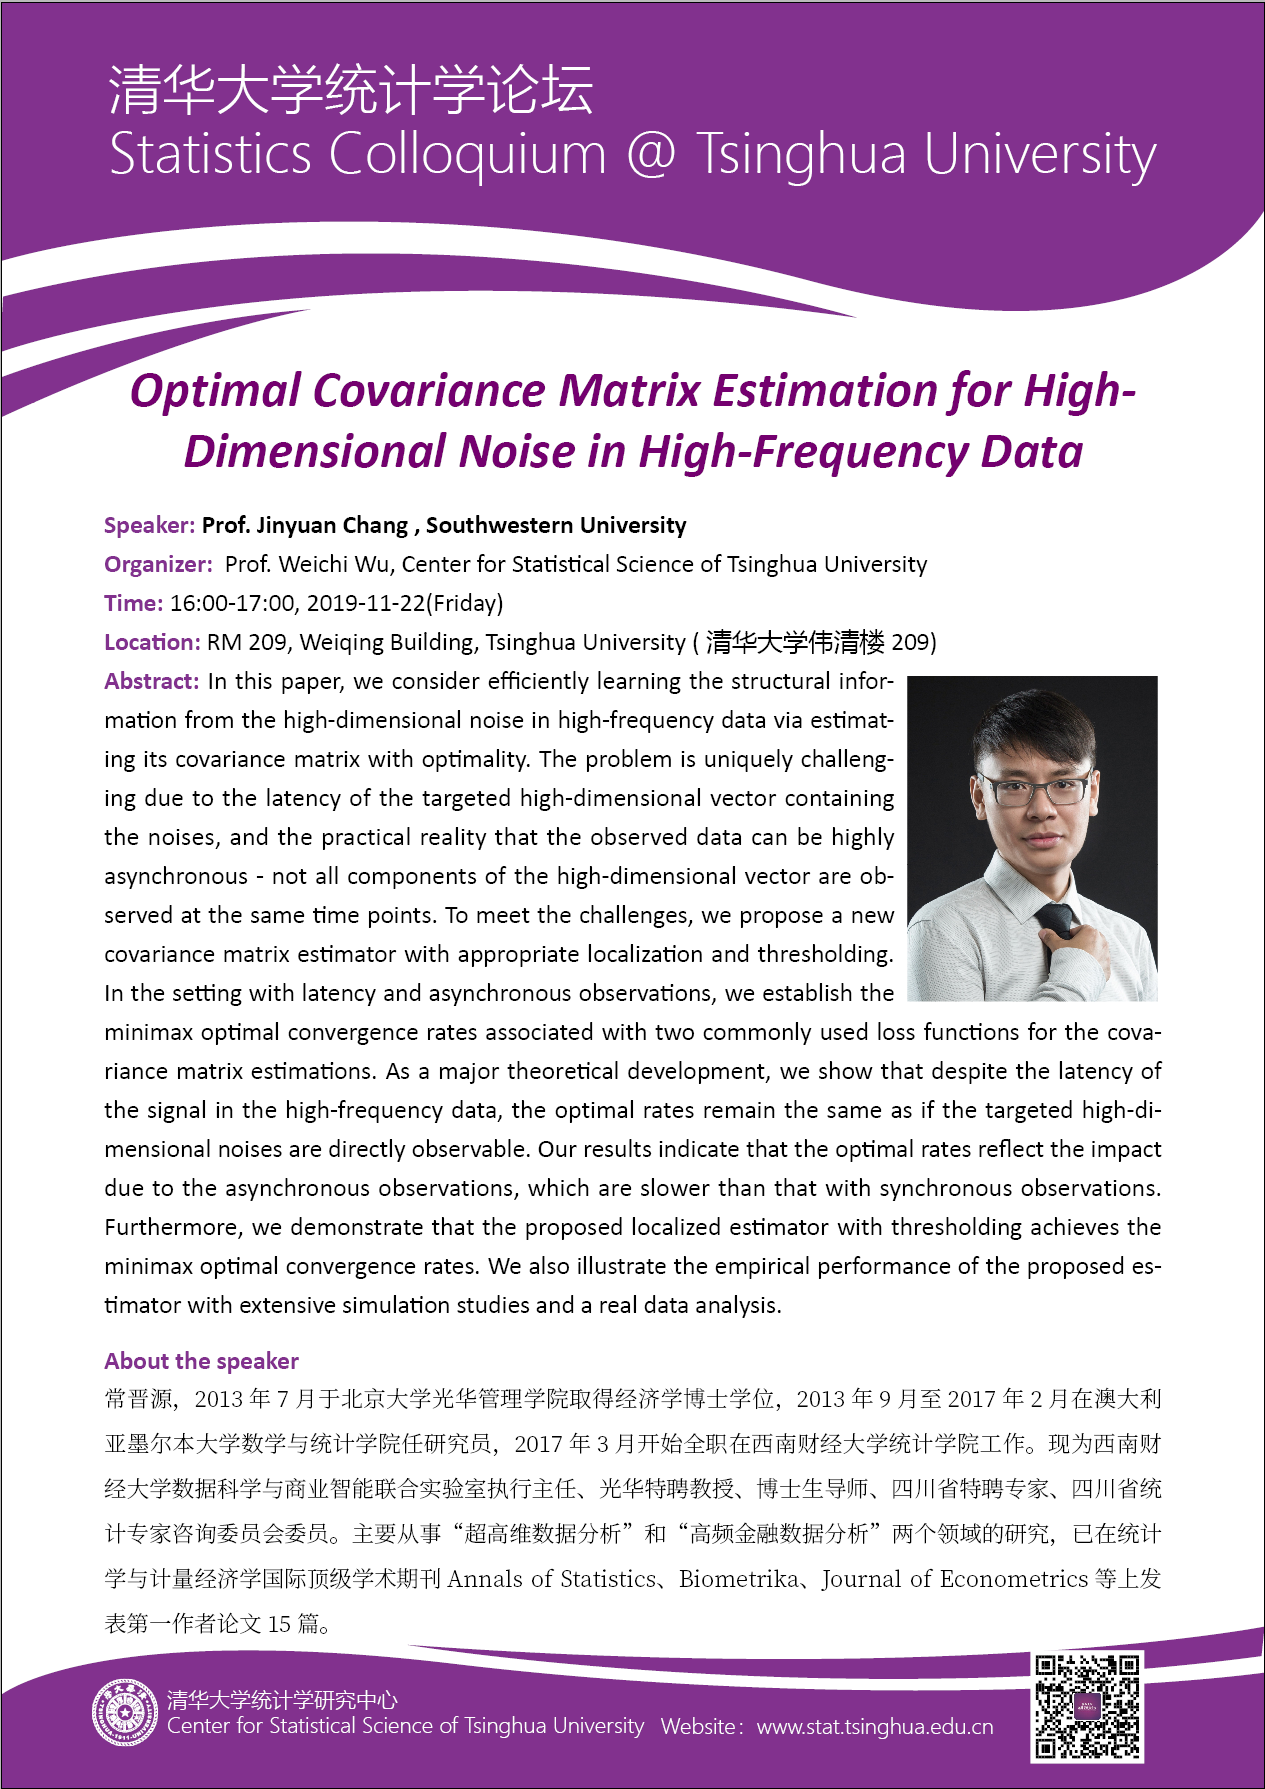 【统计学论坛】Optimal Covariance Matrix Estimation for High-Dimensional Noise in High-frequency Data